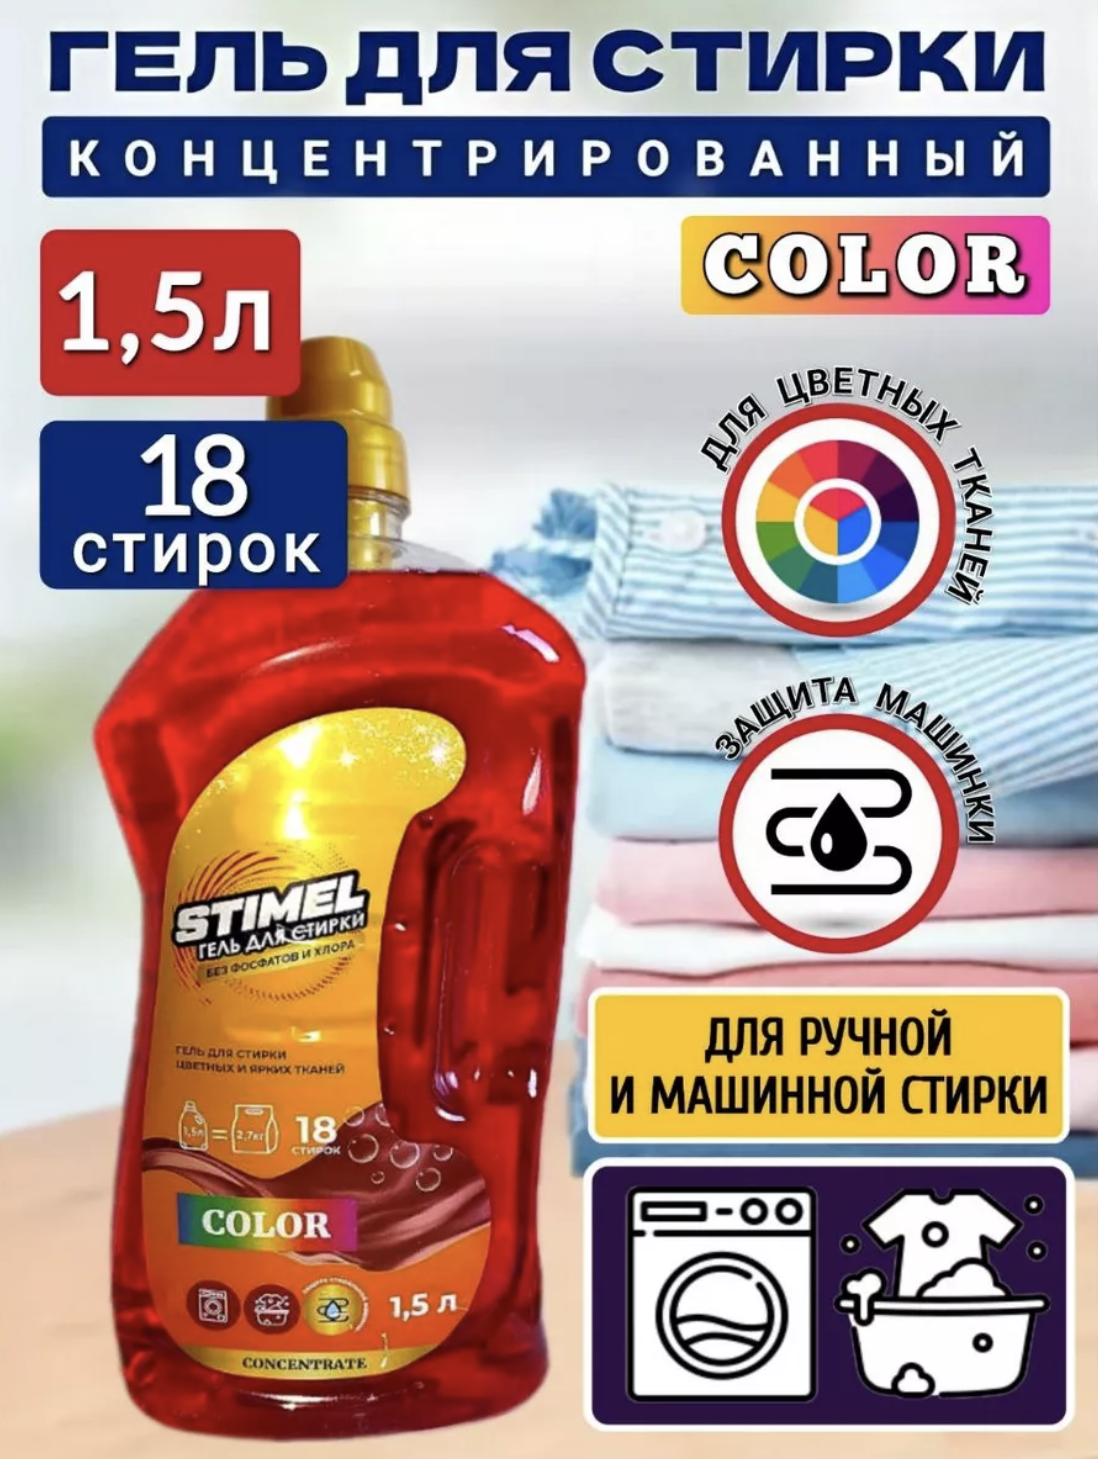   / Stimel Color -        1,5 